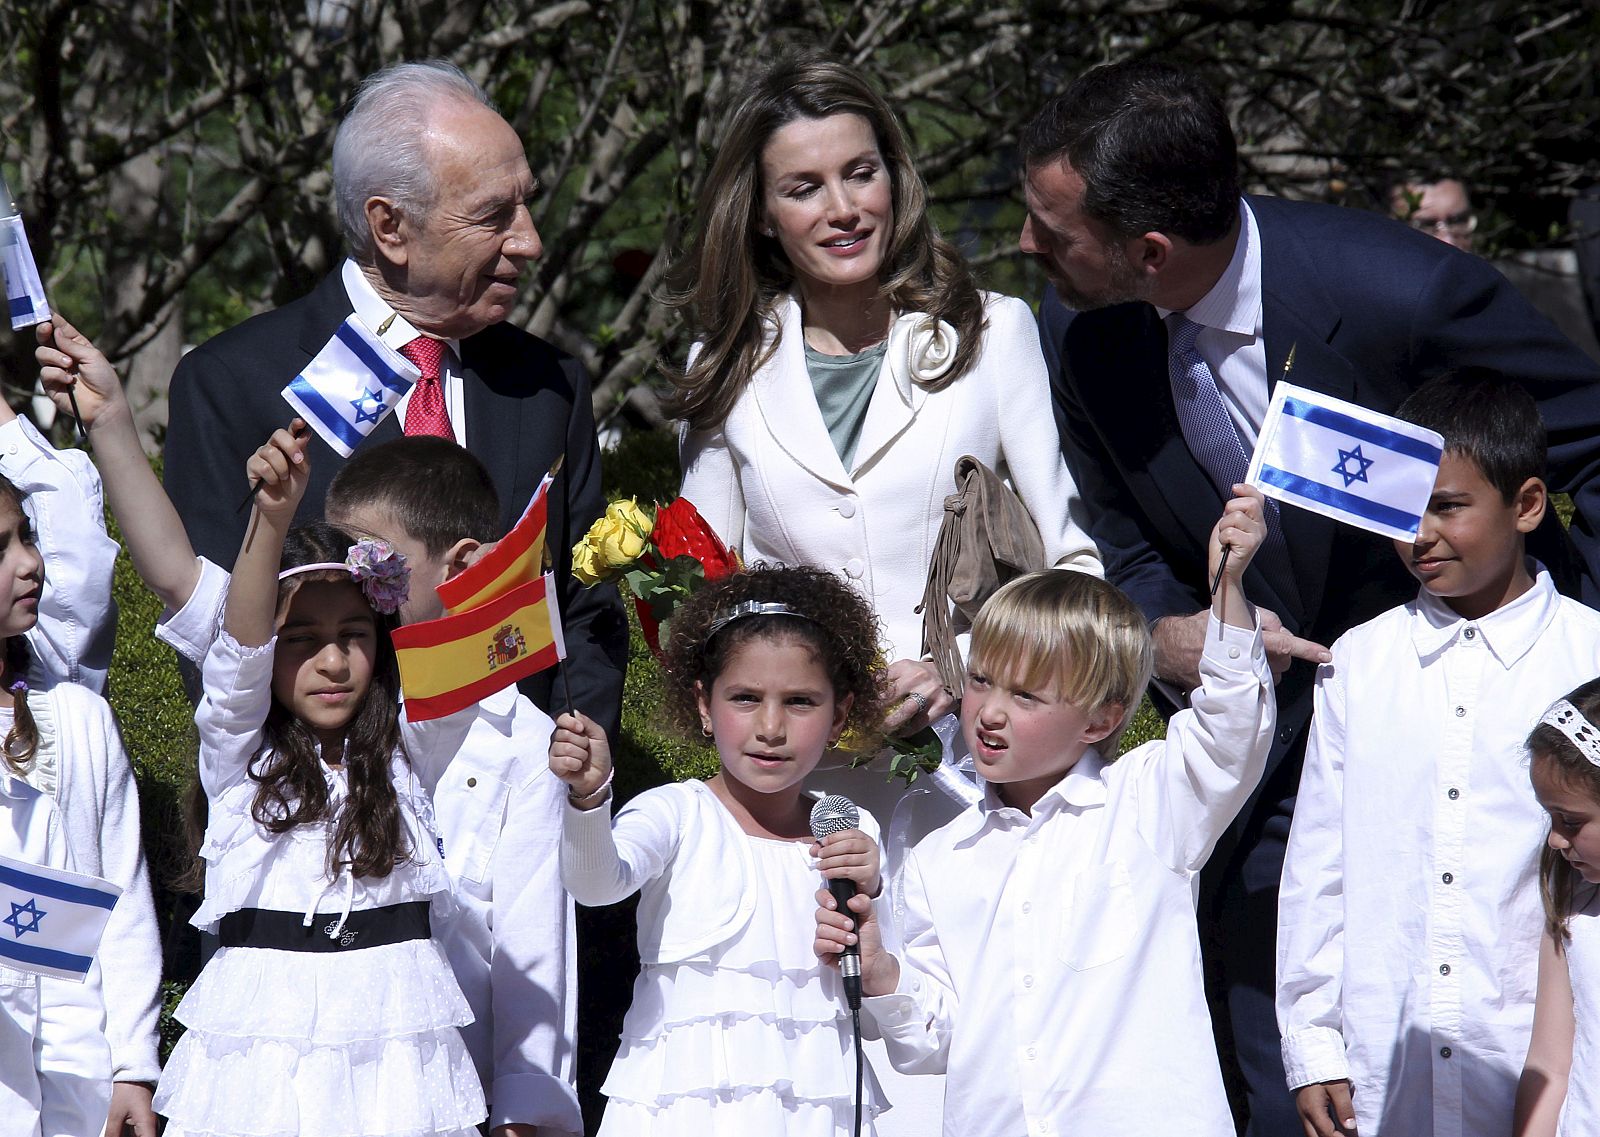 El príncipe Felipe charla con el presidente israelí, Simón Peres, a la izquierda, y su esposa, la princesa Letizia